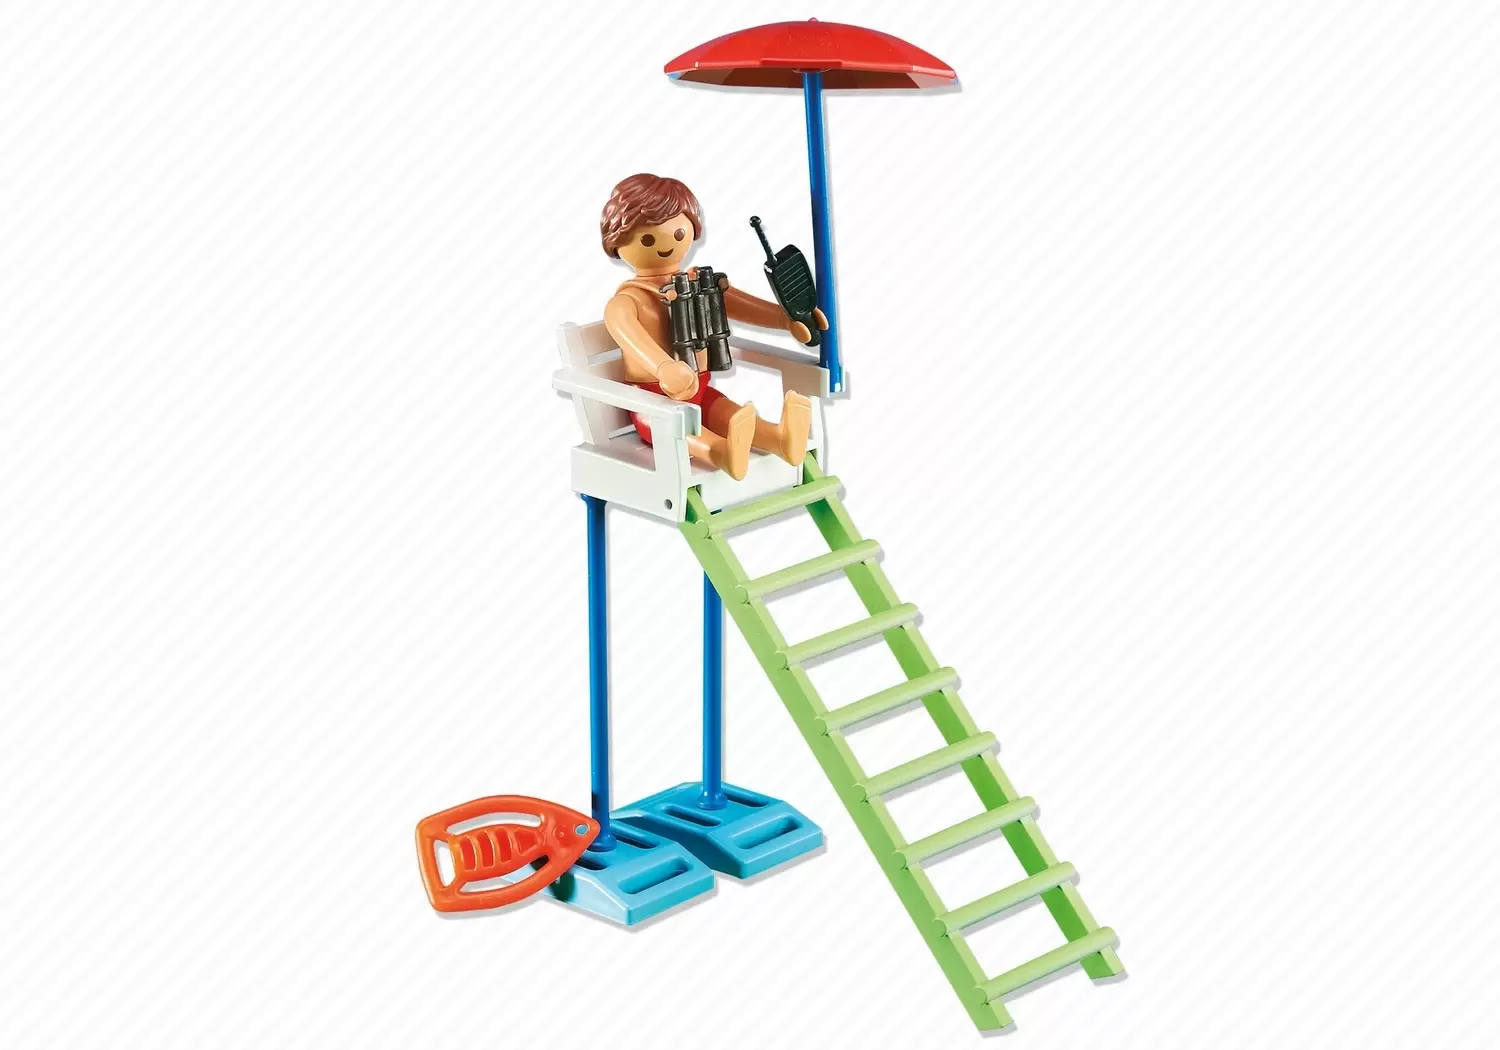 Playmobil on Hollidays - Lifeguard